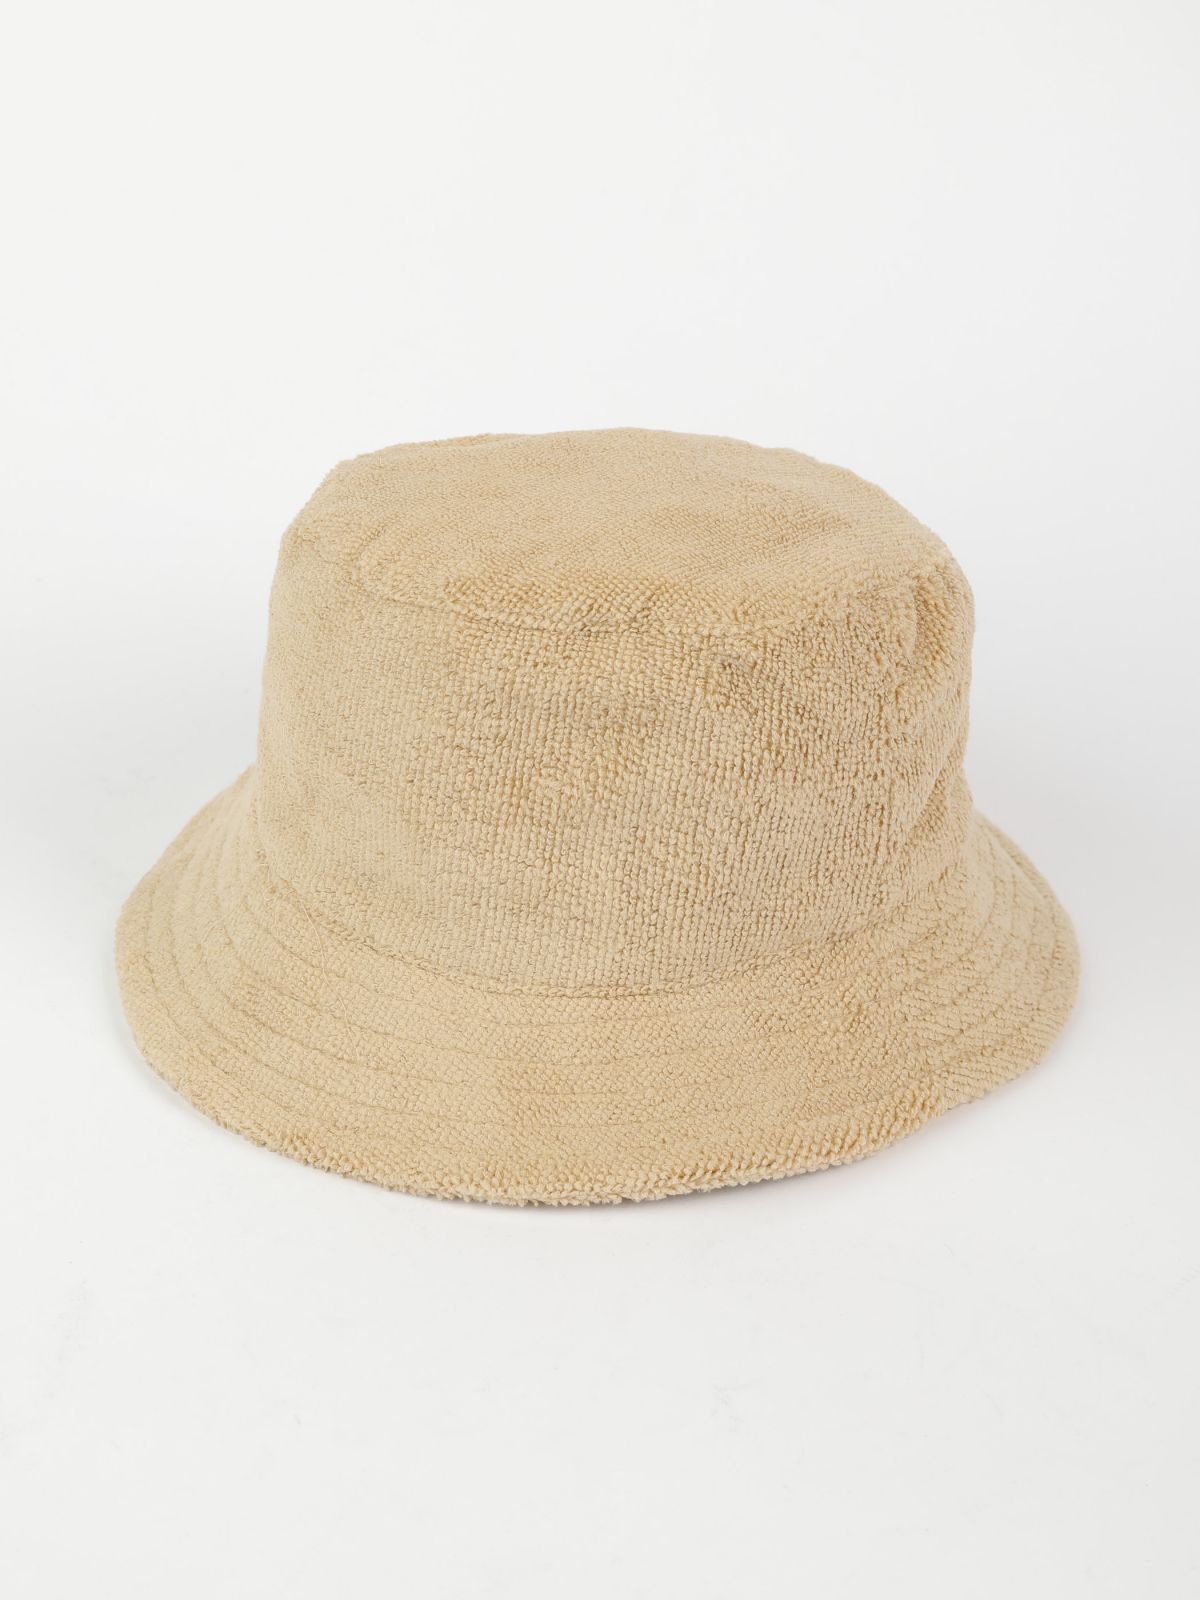  כובע באקט מגבת SNOOPY®PEANUTS / בנים של TERMINAL X KIDS